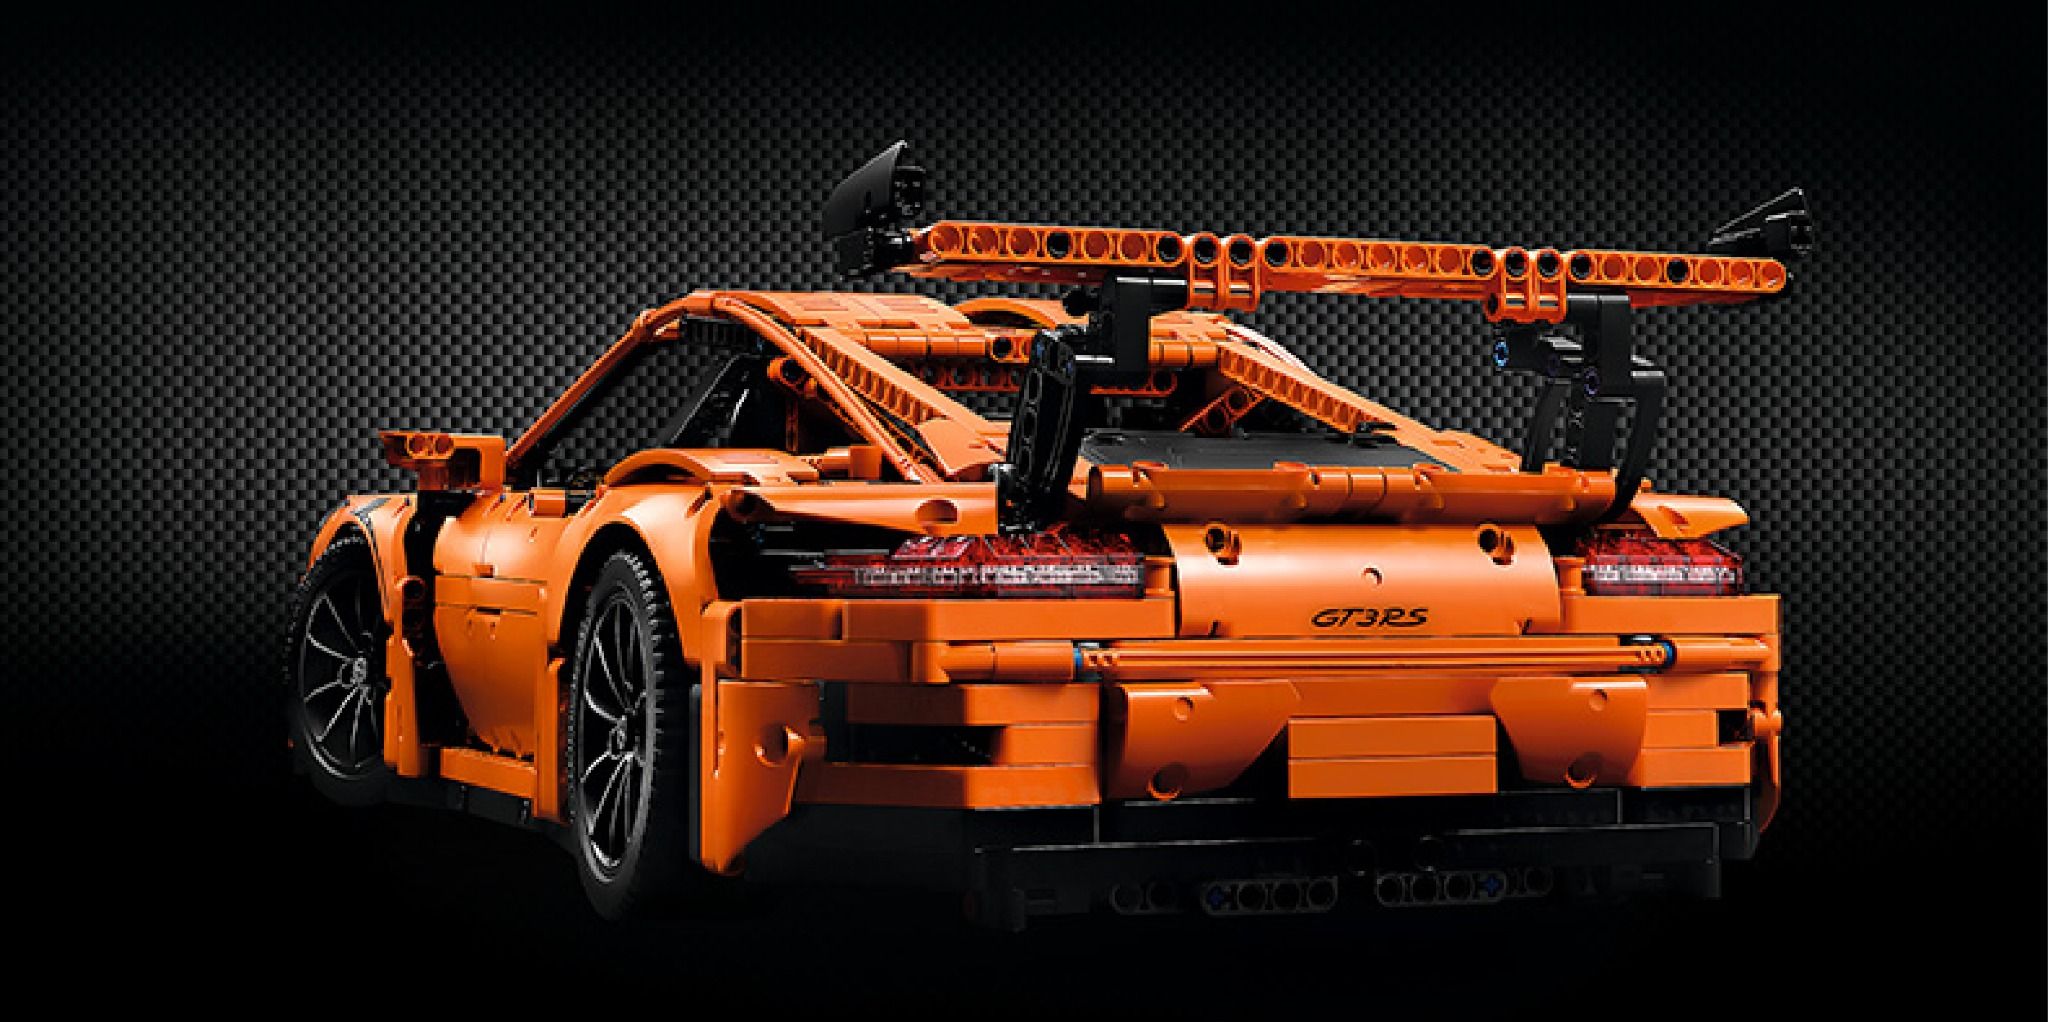  Mô hình xe ô tô lắp ghép Porsche 911 Gt3 RS Orange 2758 pcs tỉ lệ 1:8 LG024 